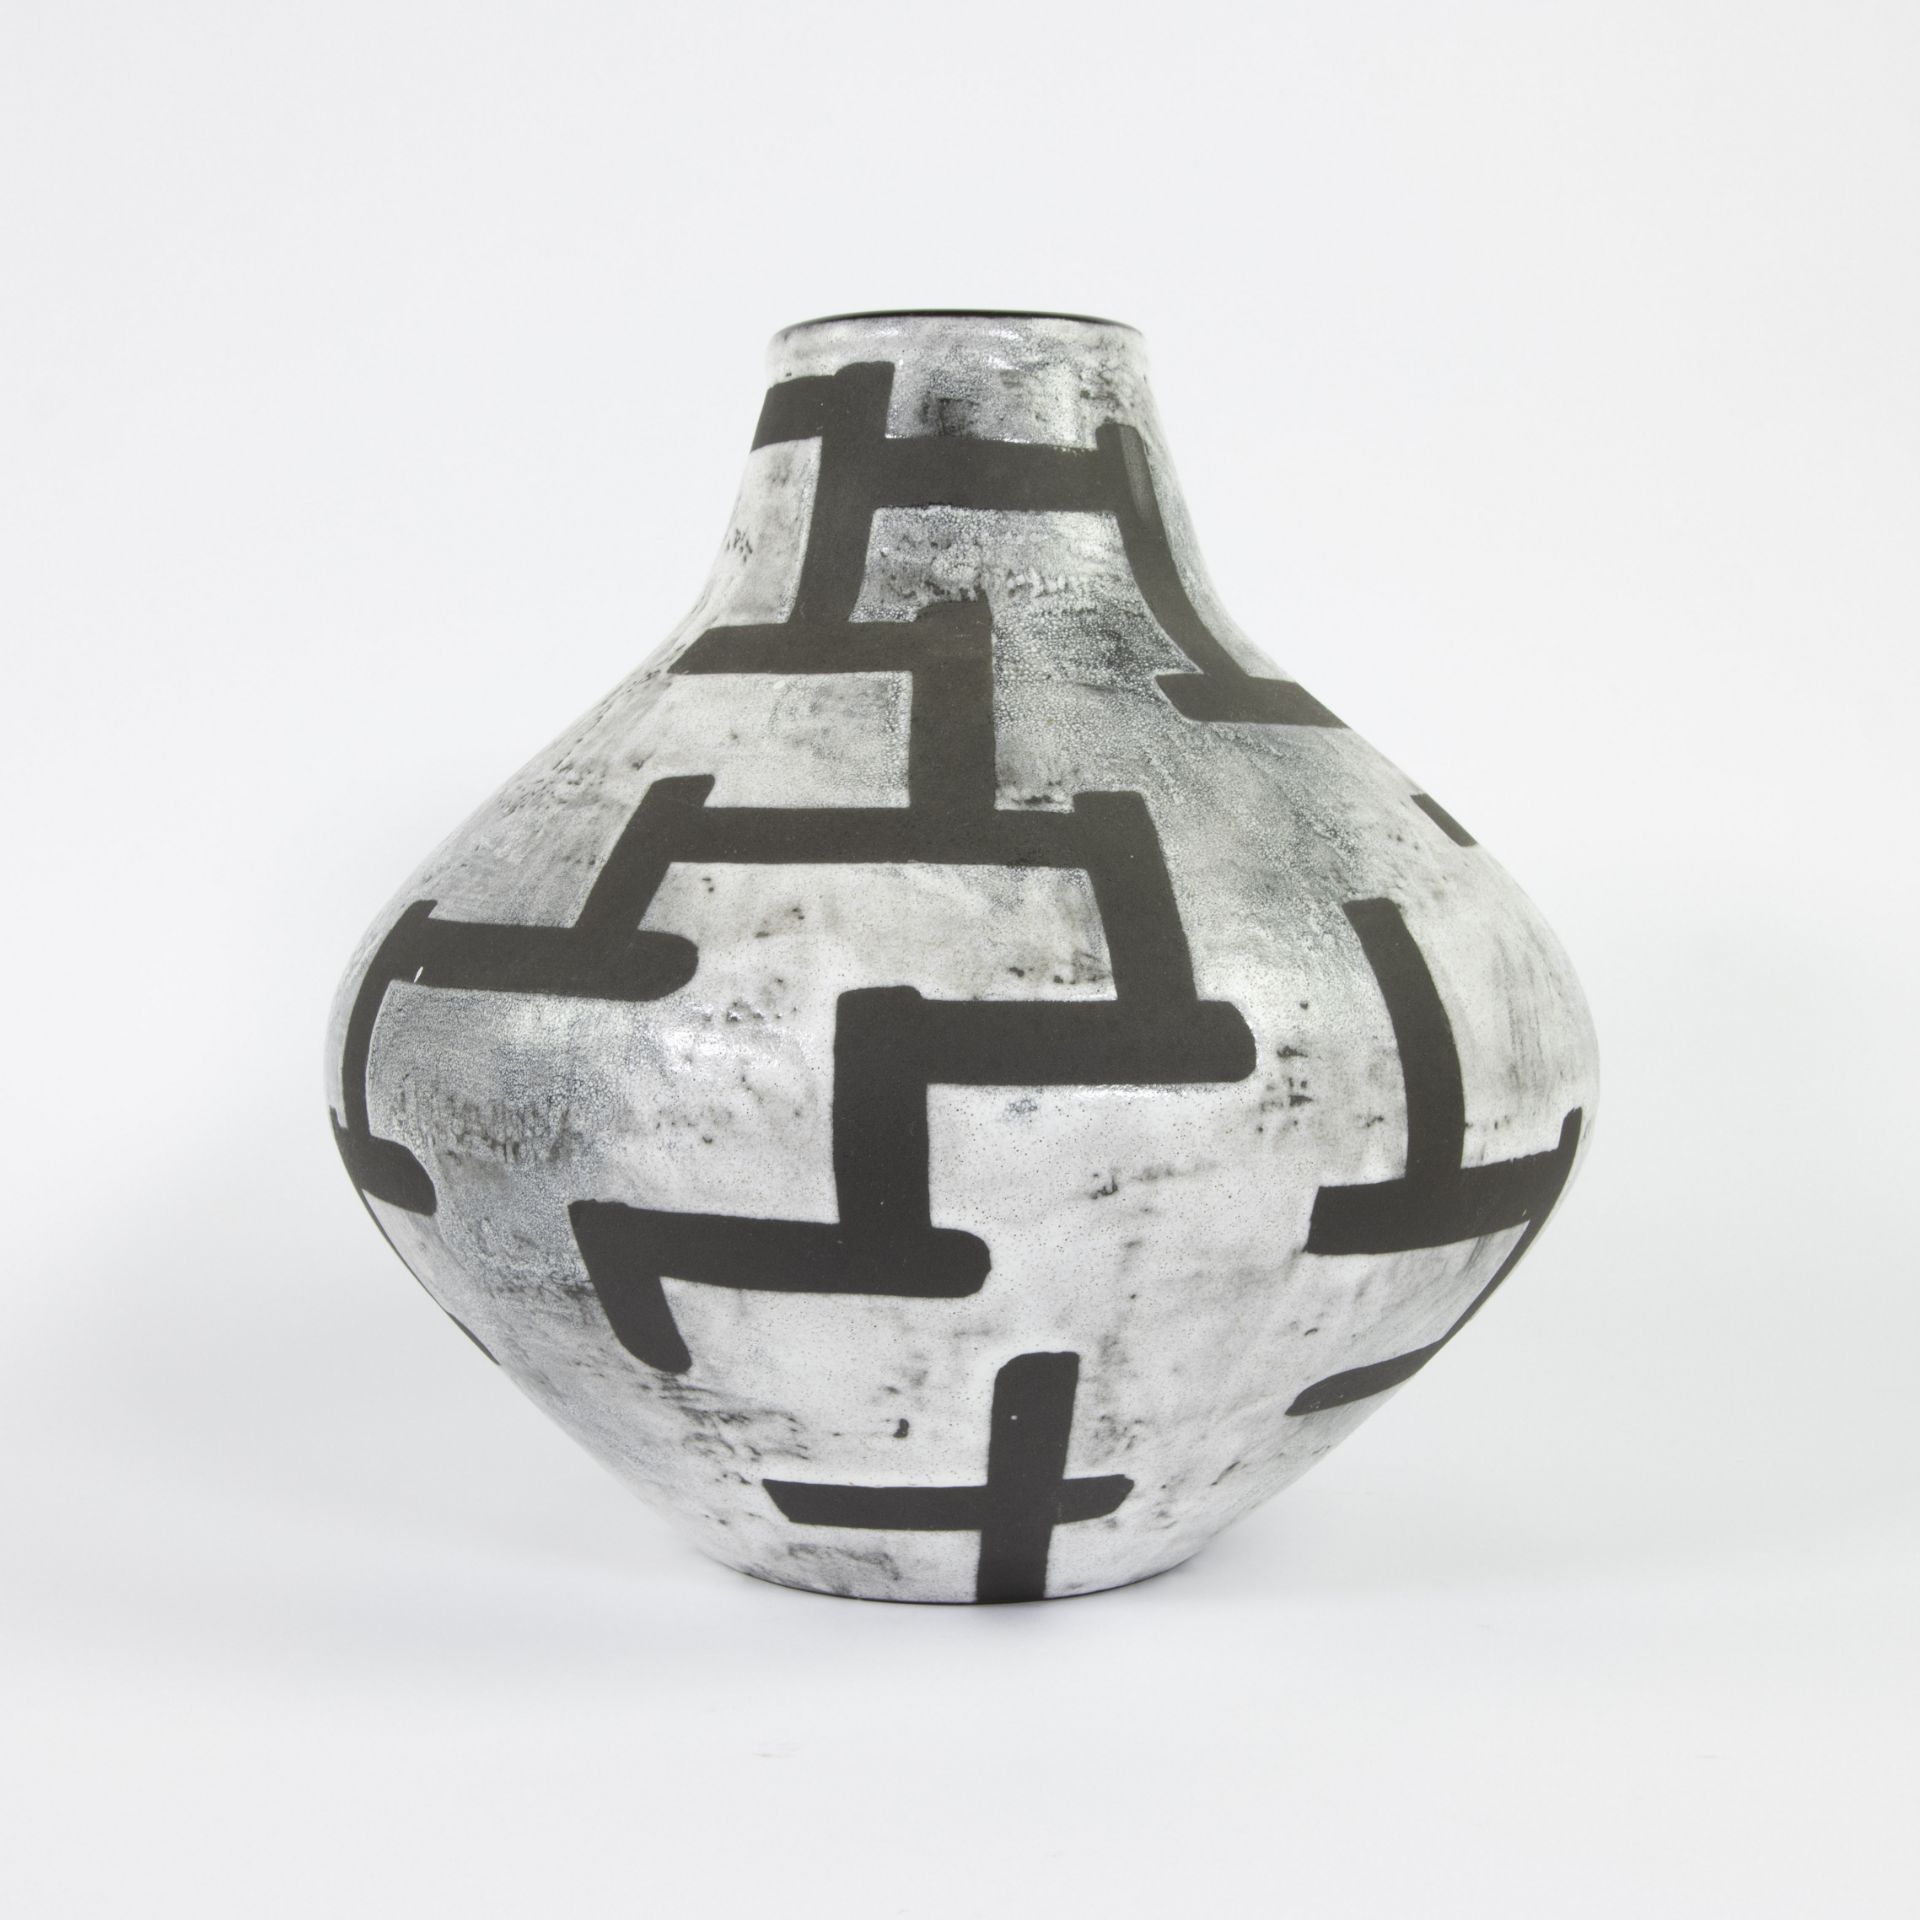 Ziegler Schaffhausen Keramik Vase sixties - Image 4 of 5